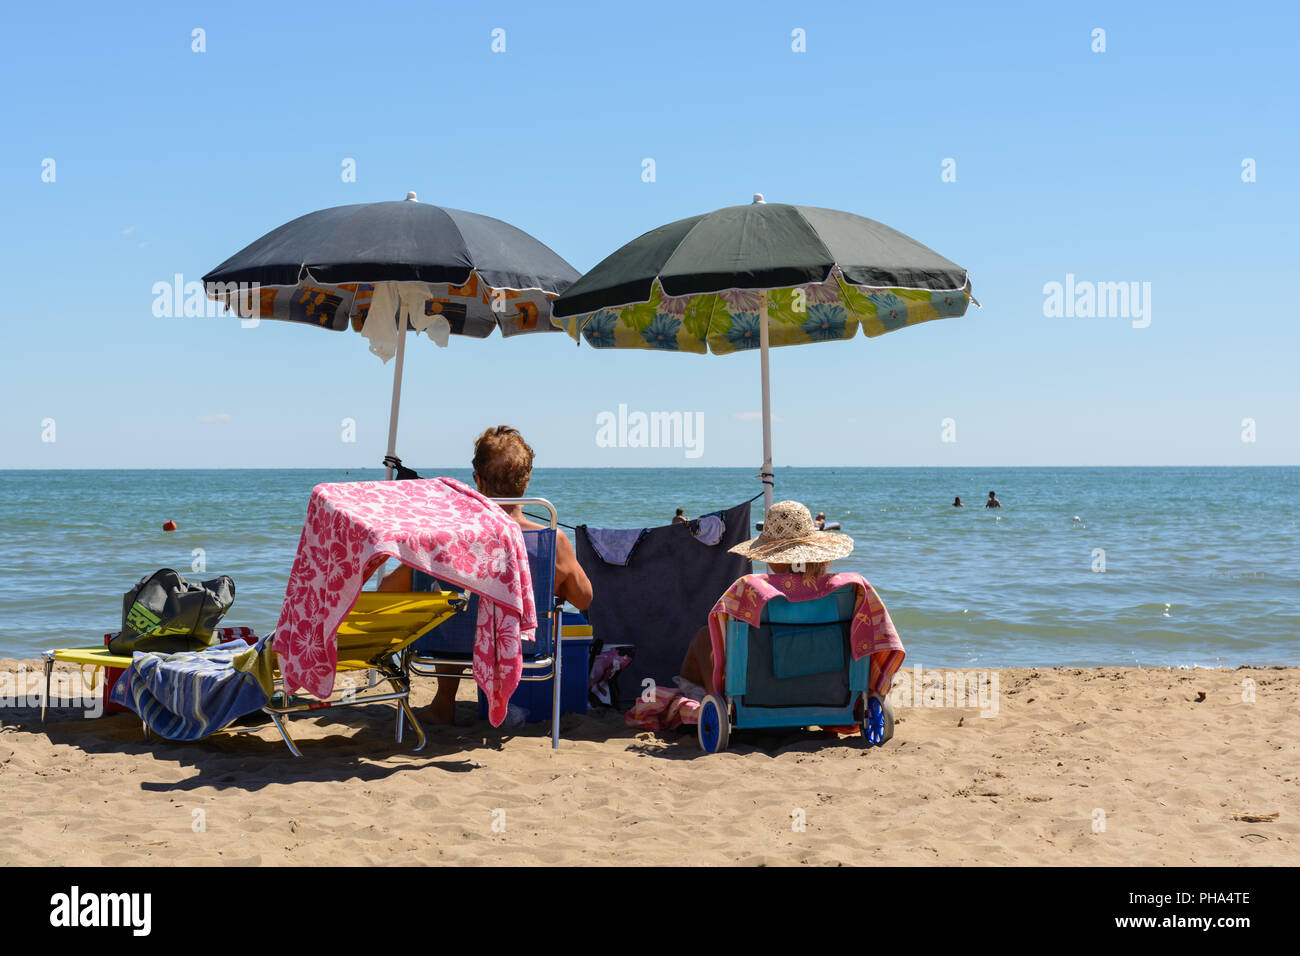 Dos bañistas que disfrutan de la playa de arena bajo el paraguas Foto de stock